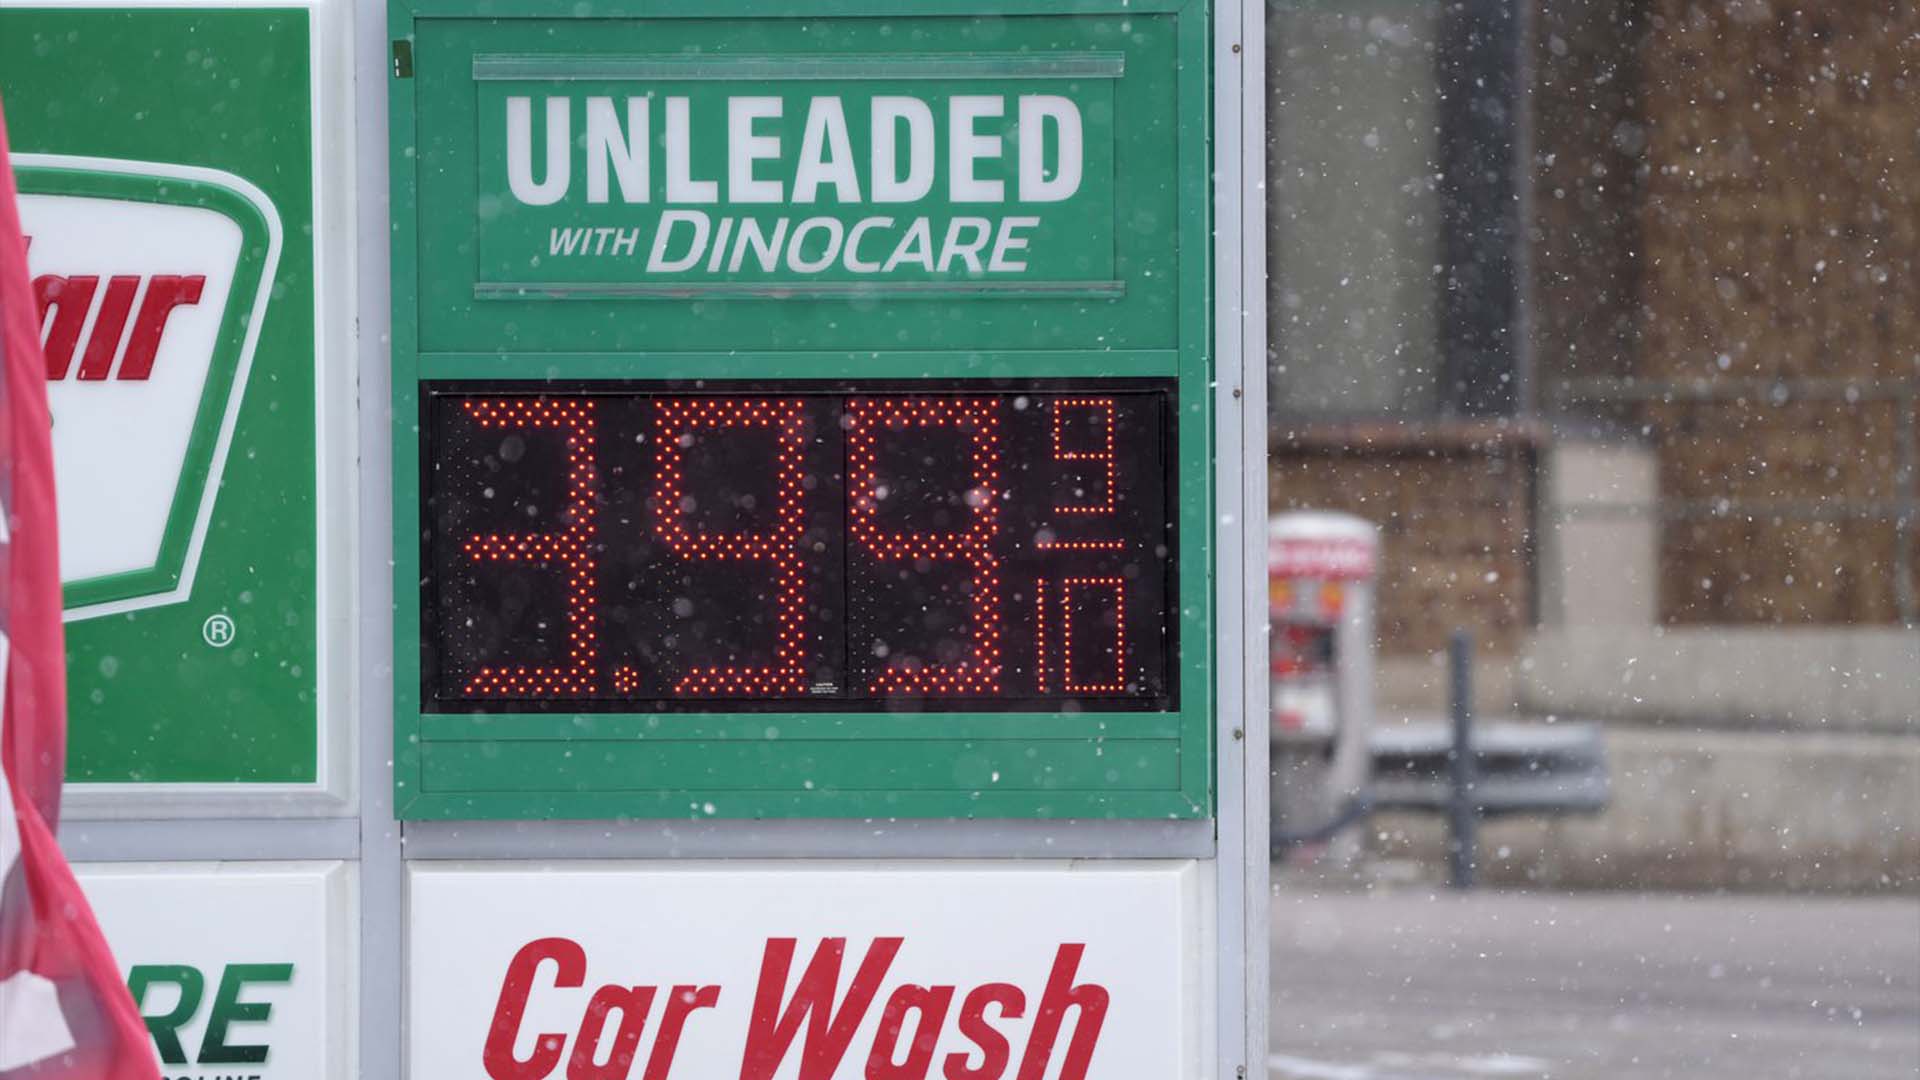 Le prix d'un gallon d'essence ordinaire est indiqué sur un panneau numérique dans une station-service le mercredi 9 mars 2022 à Denver.